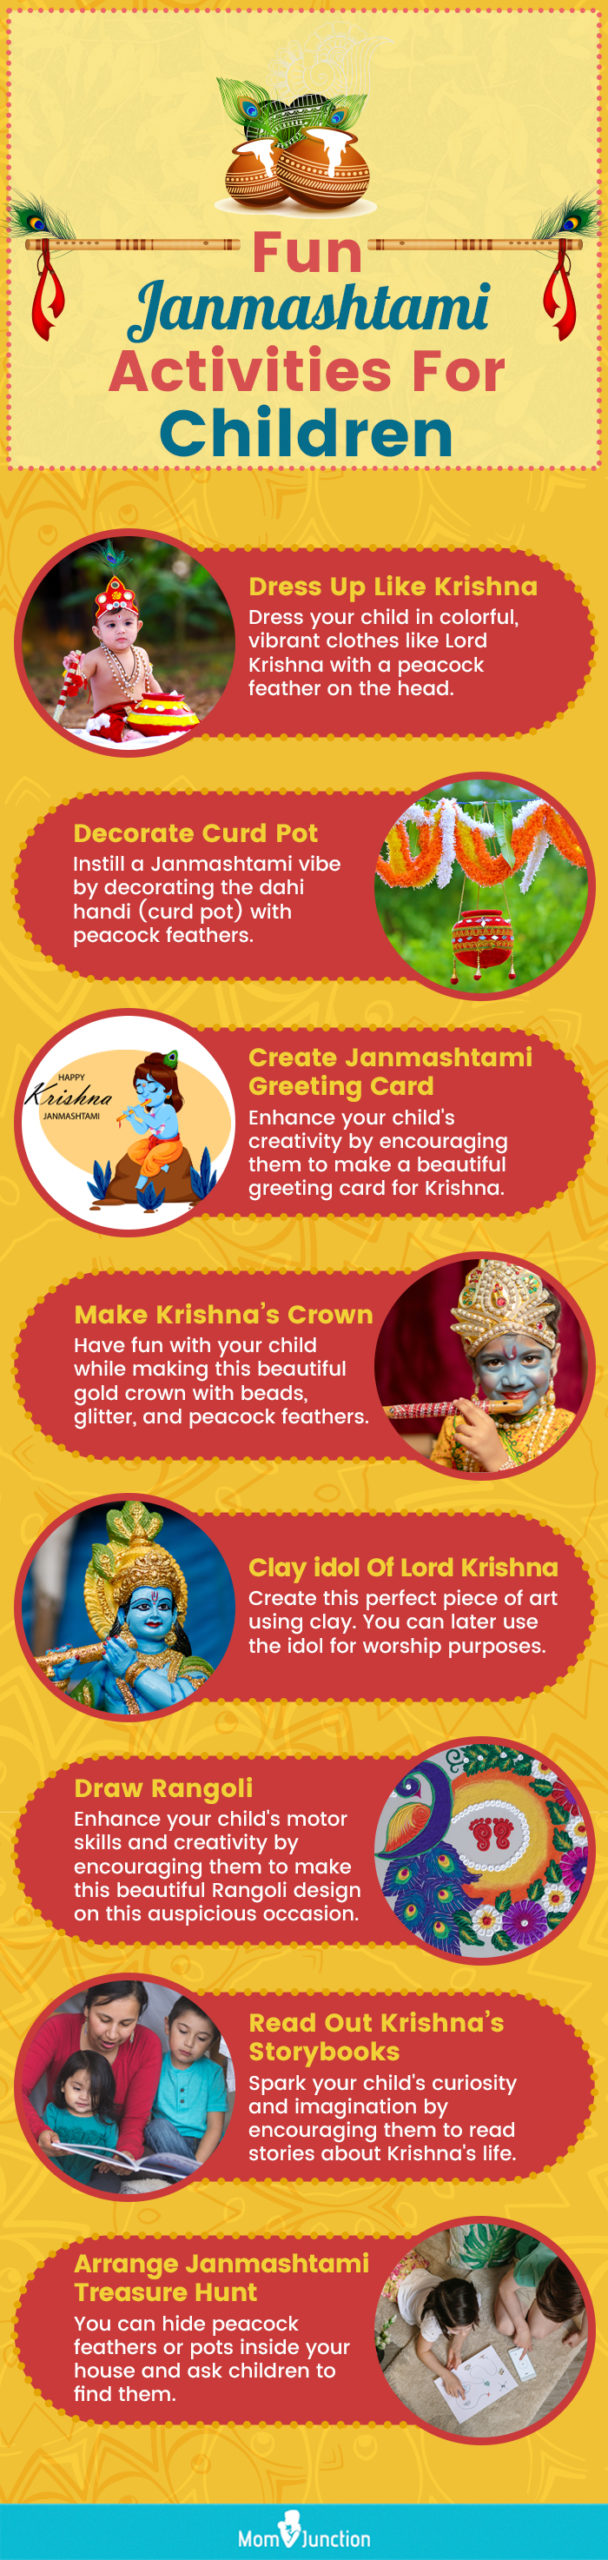 fun janmashtami activities for children (infographic)